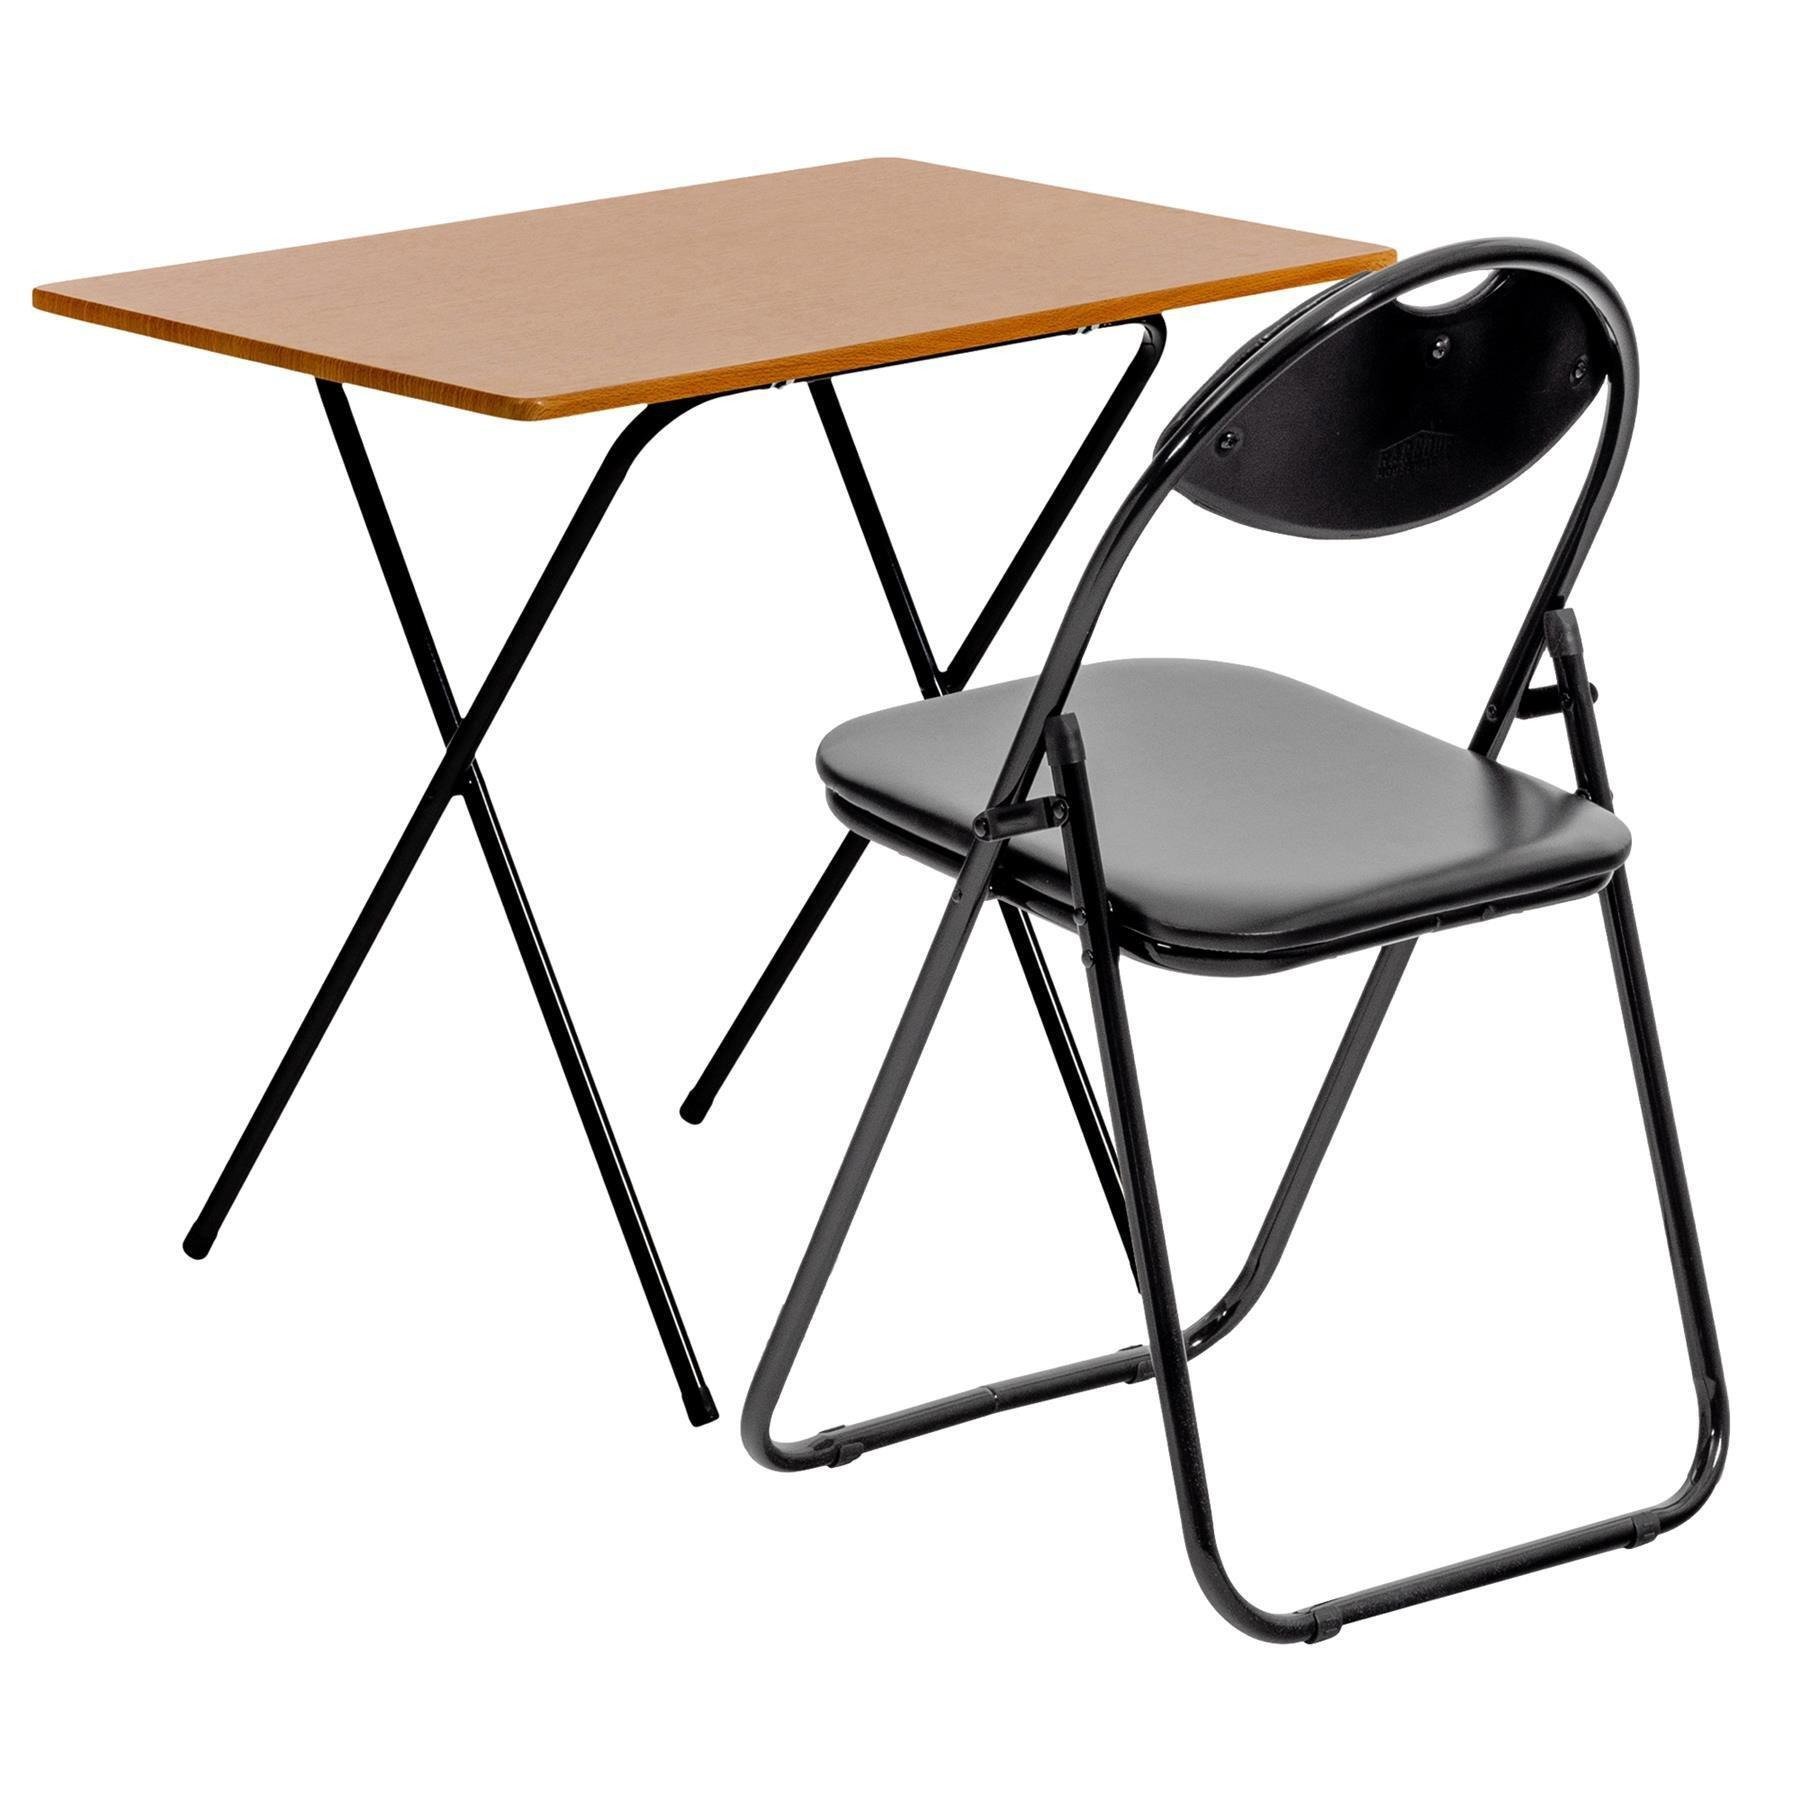 Folding Wooden Desk & Chair Set Natural/Black - image 1